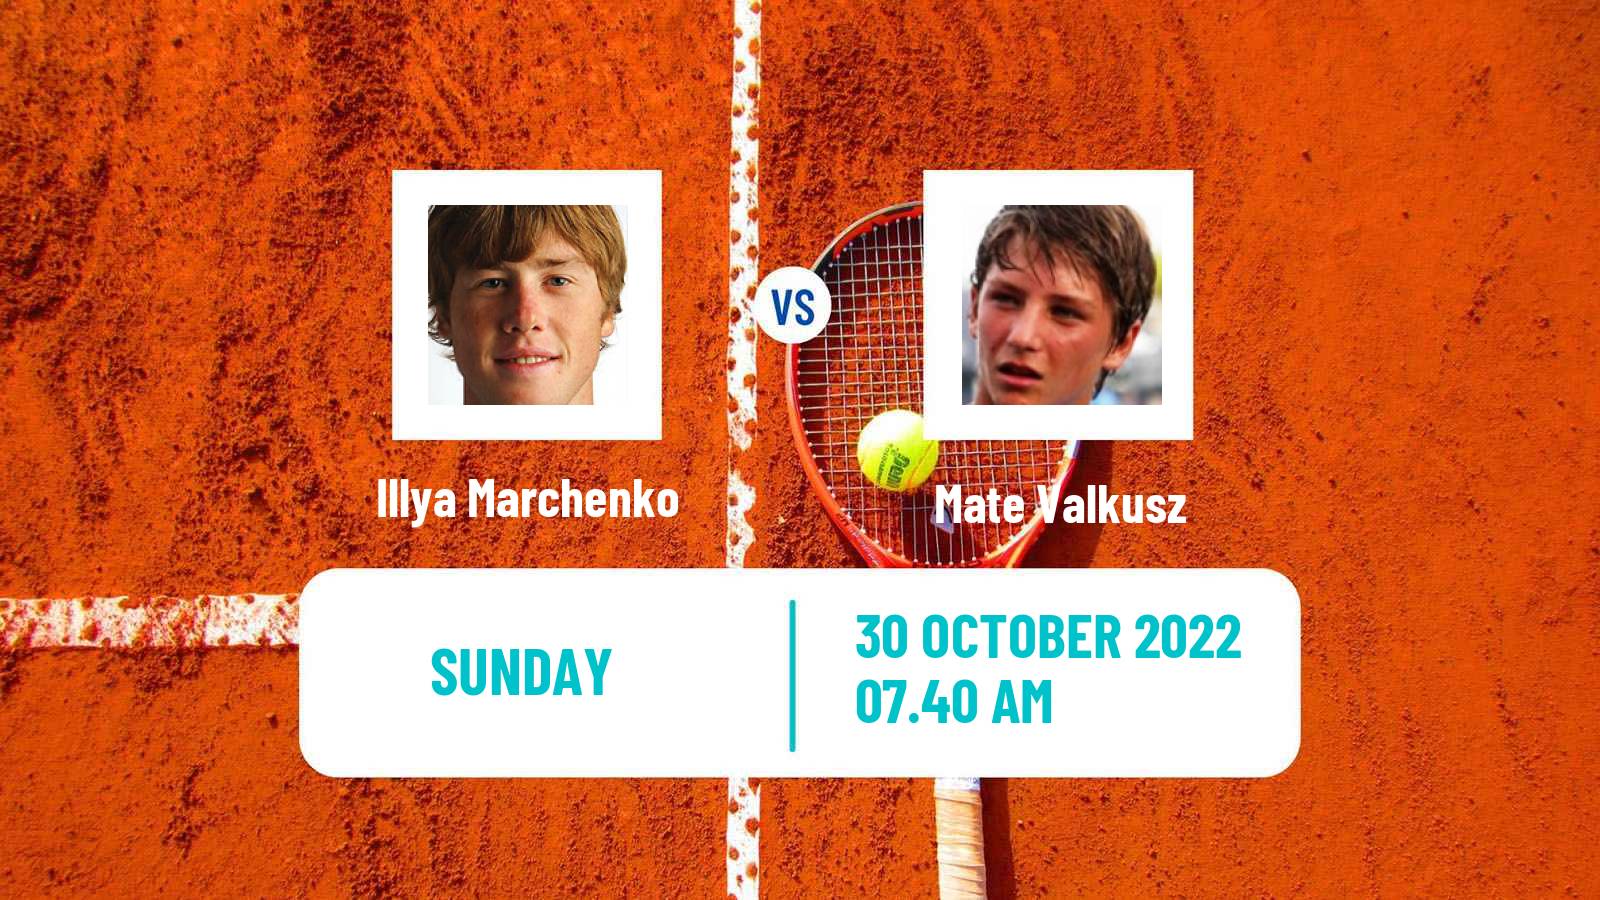 Tennis ATP Challenger Illya Marchenko - Mate Valkusz